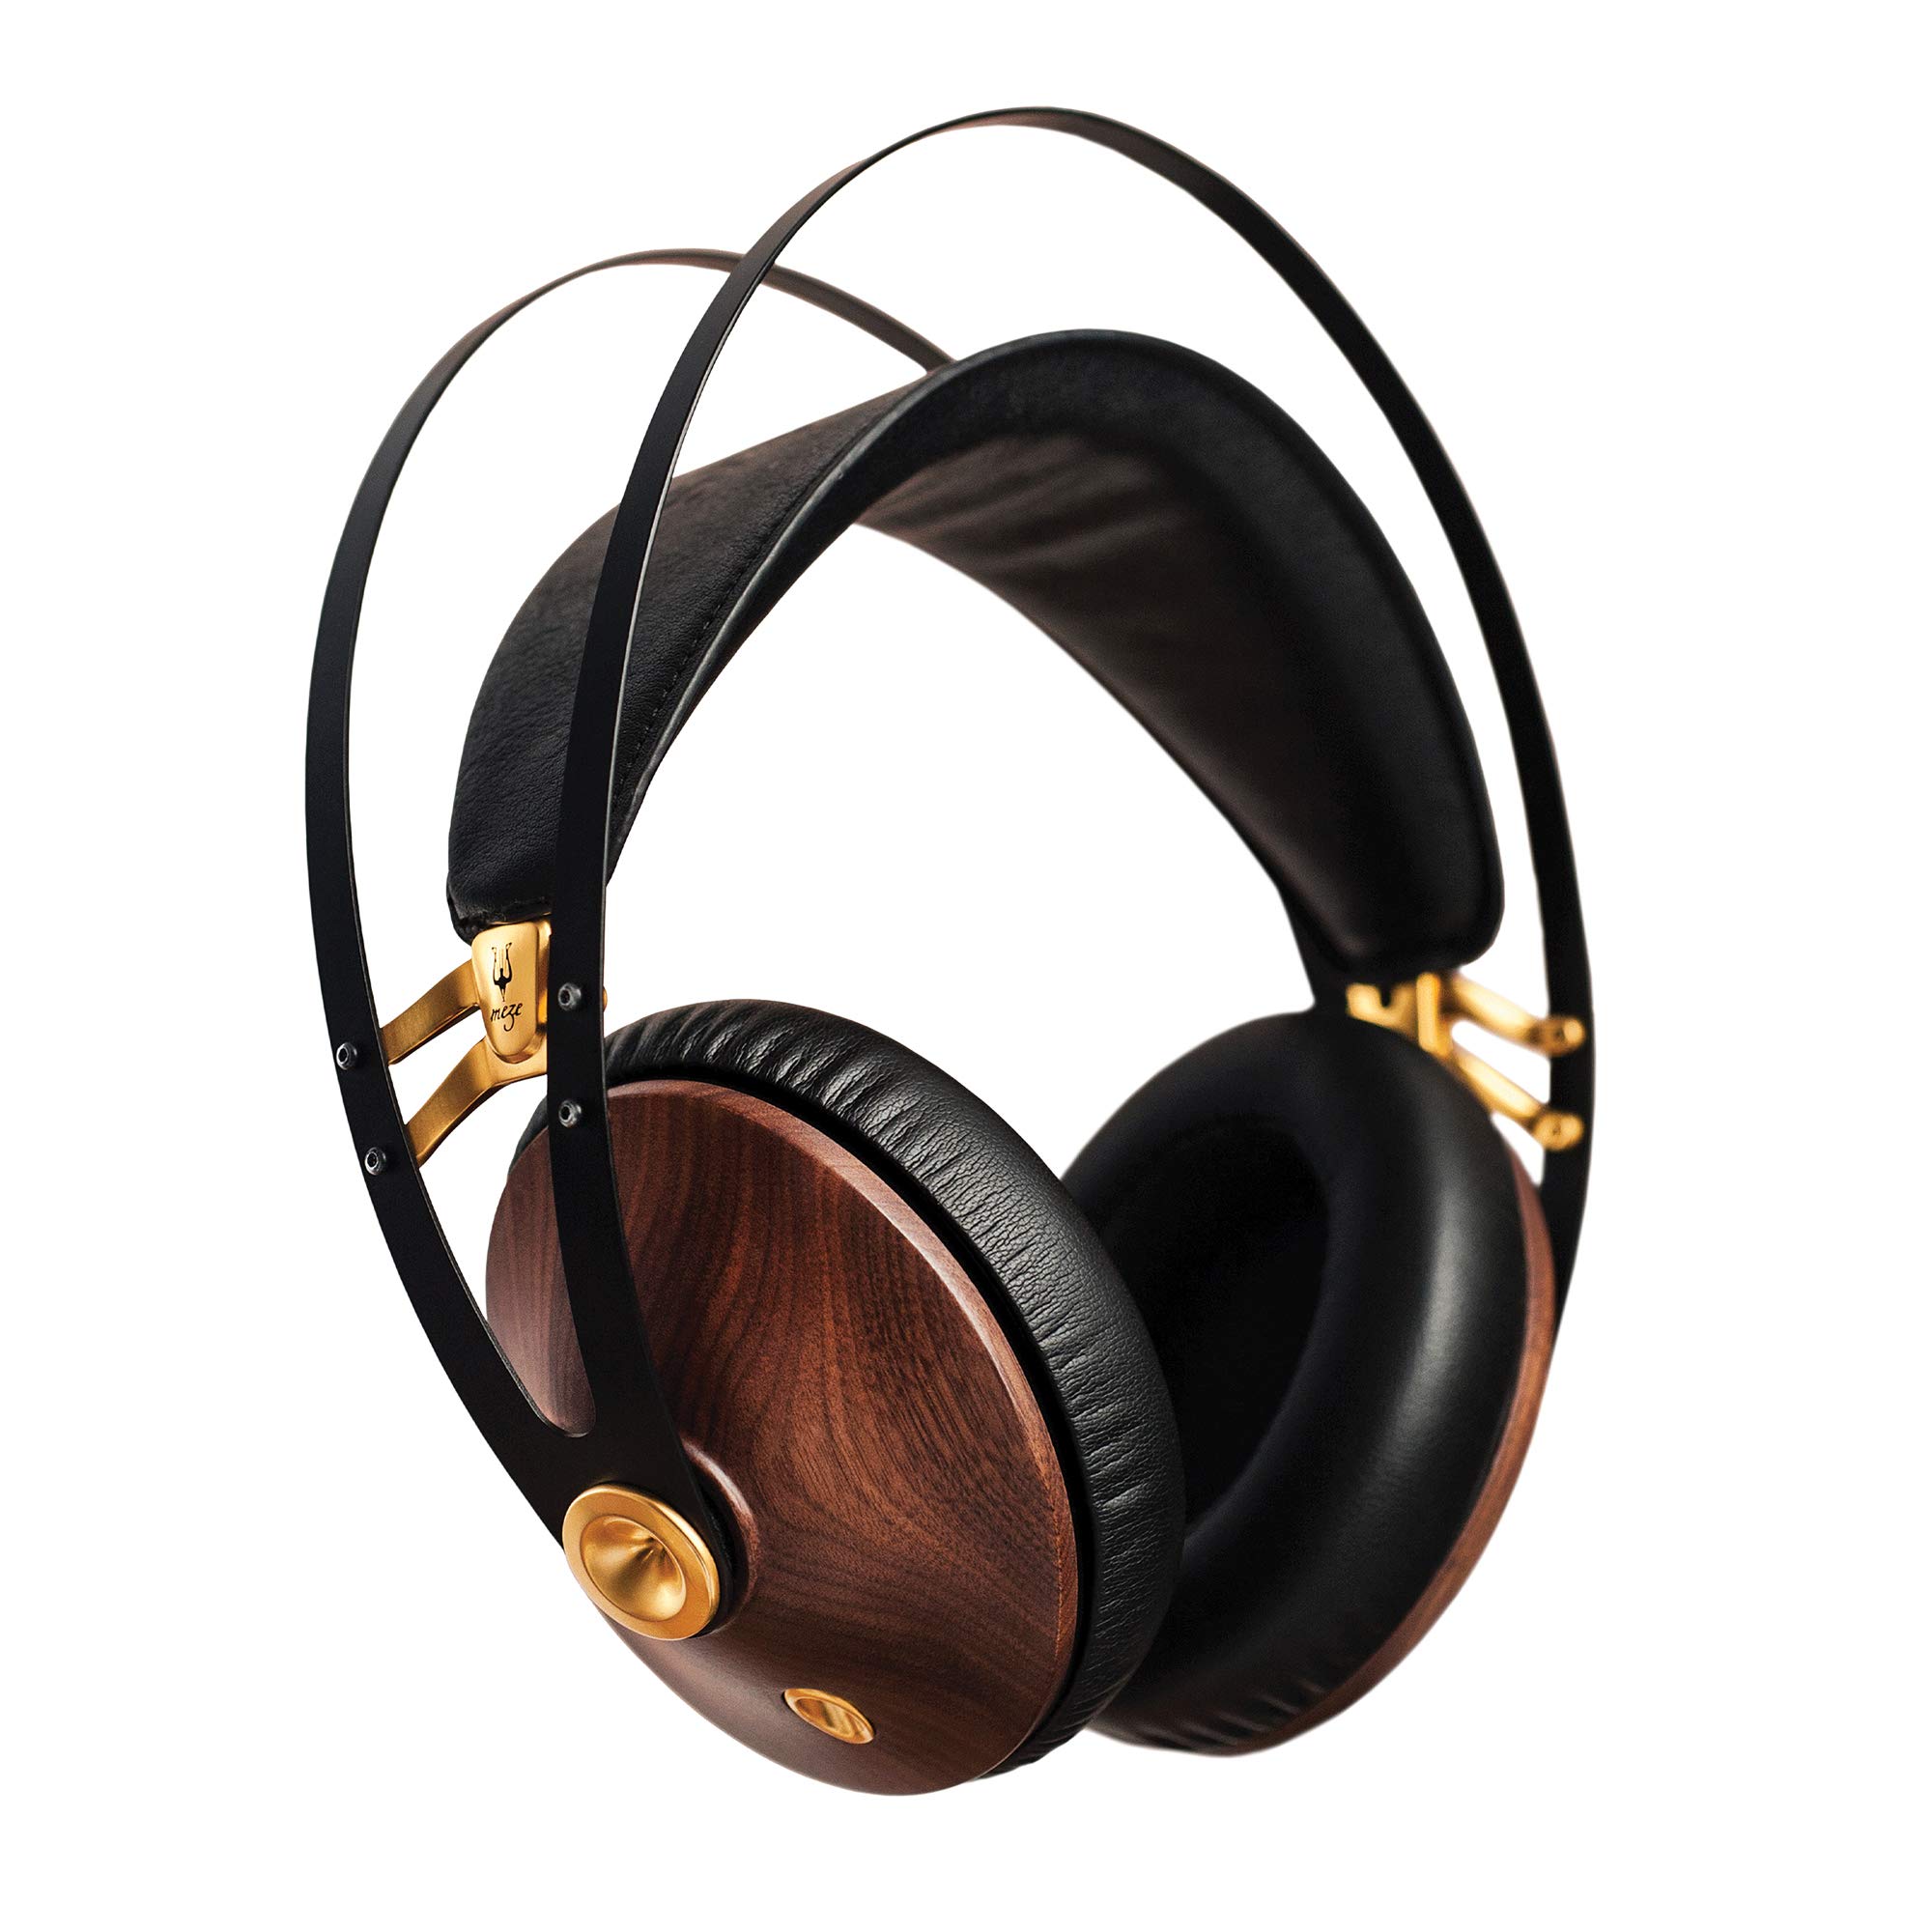 Meze Headphones Meze 99 经典胡桃金 |带麦克风和可自动调节头带的有线包耳式耳机 |适合发烧友的经典木质封闭式耳机